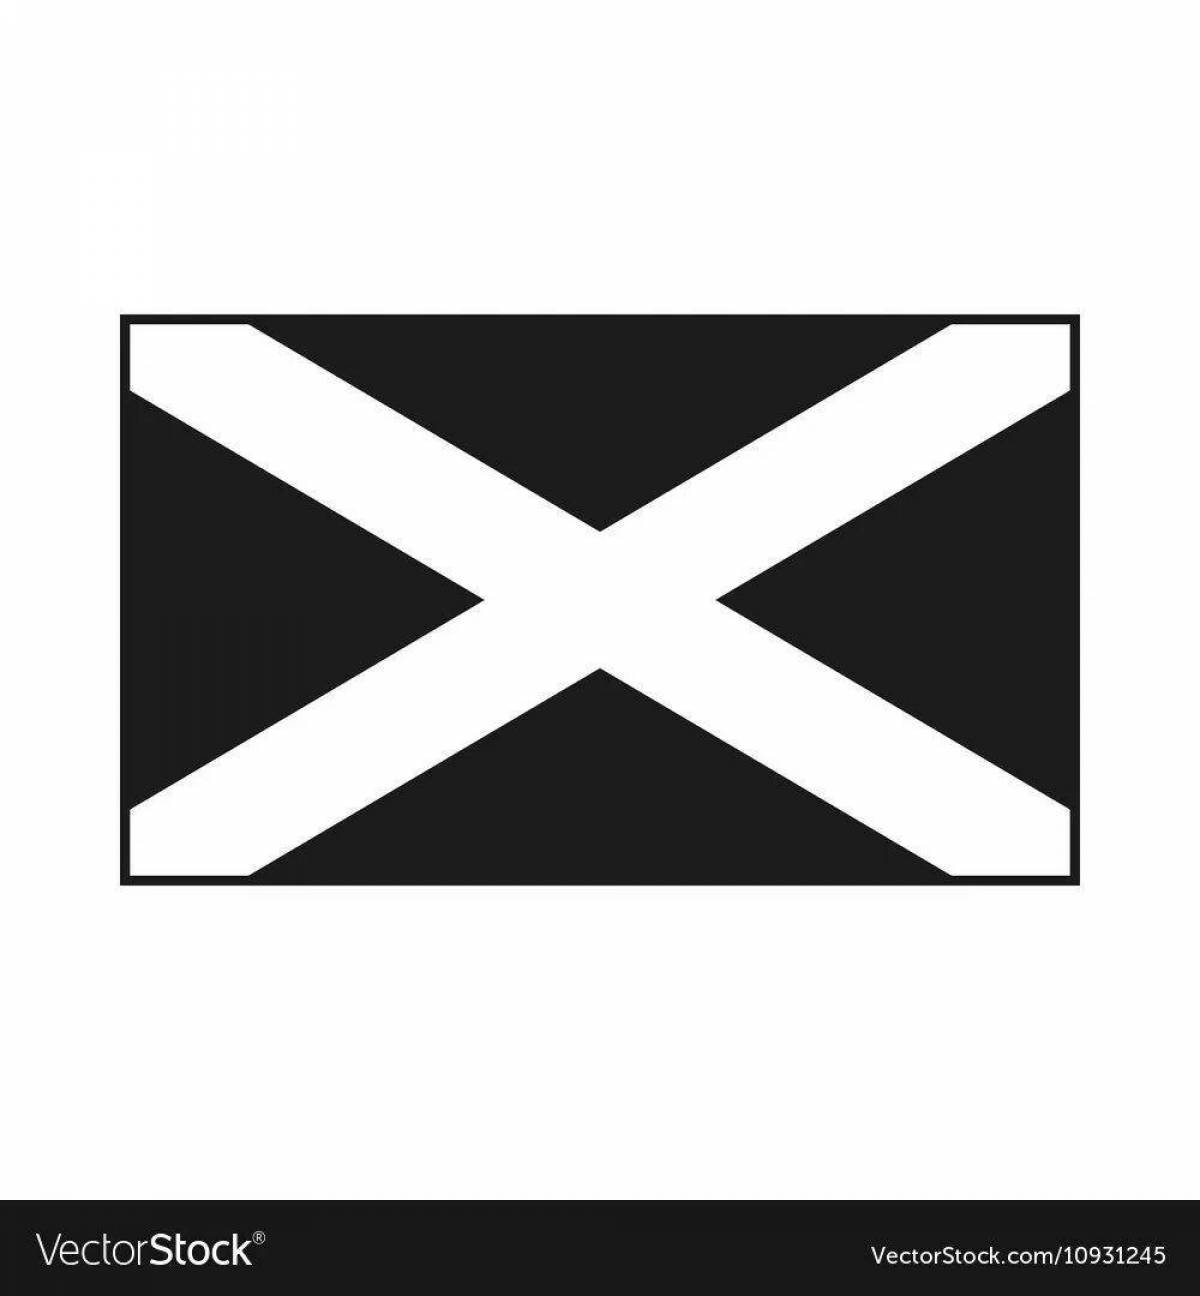 Флаг андреевский крест. Андреевский крест флаг Шотландии. Черный флаг с белым крестом. Красный флаг с Андреевским крестом. Черный Андреевский флаг.